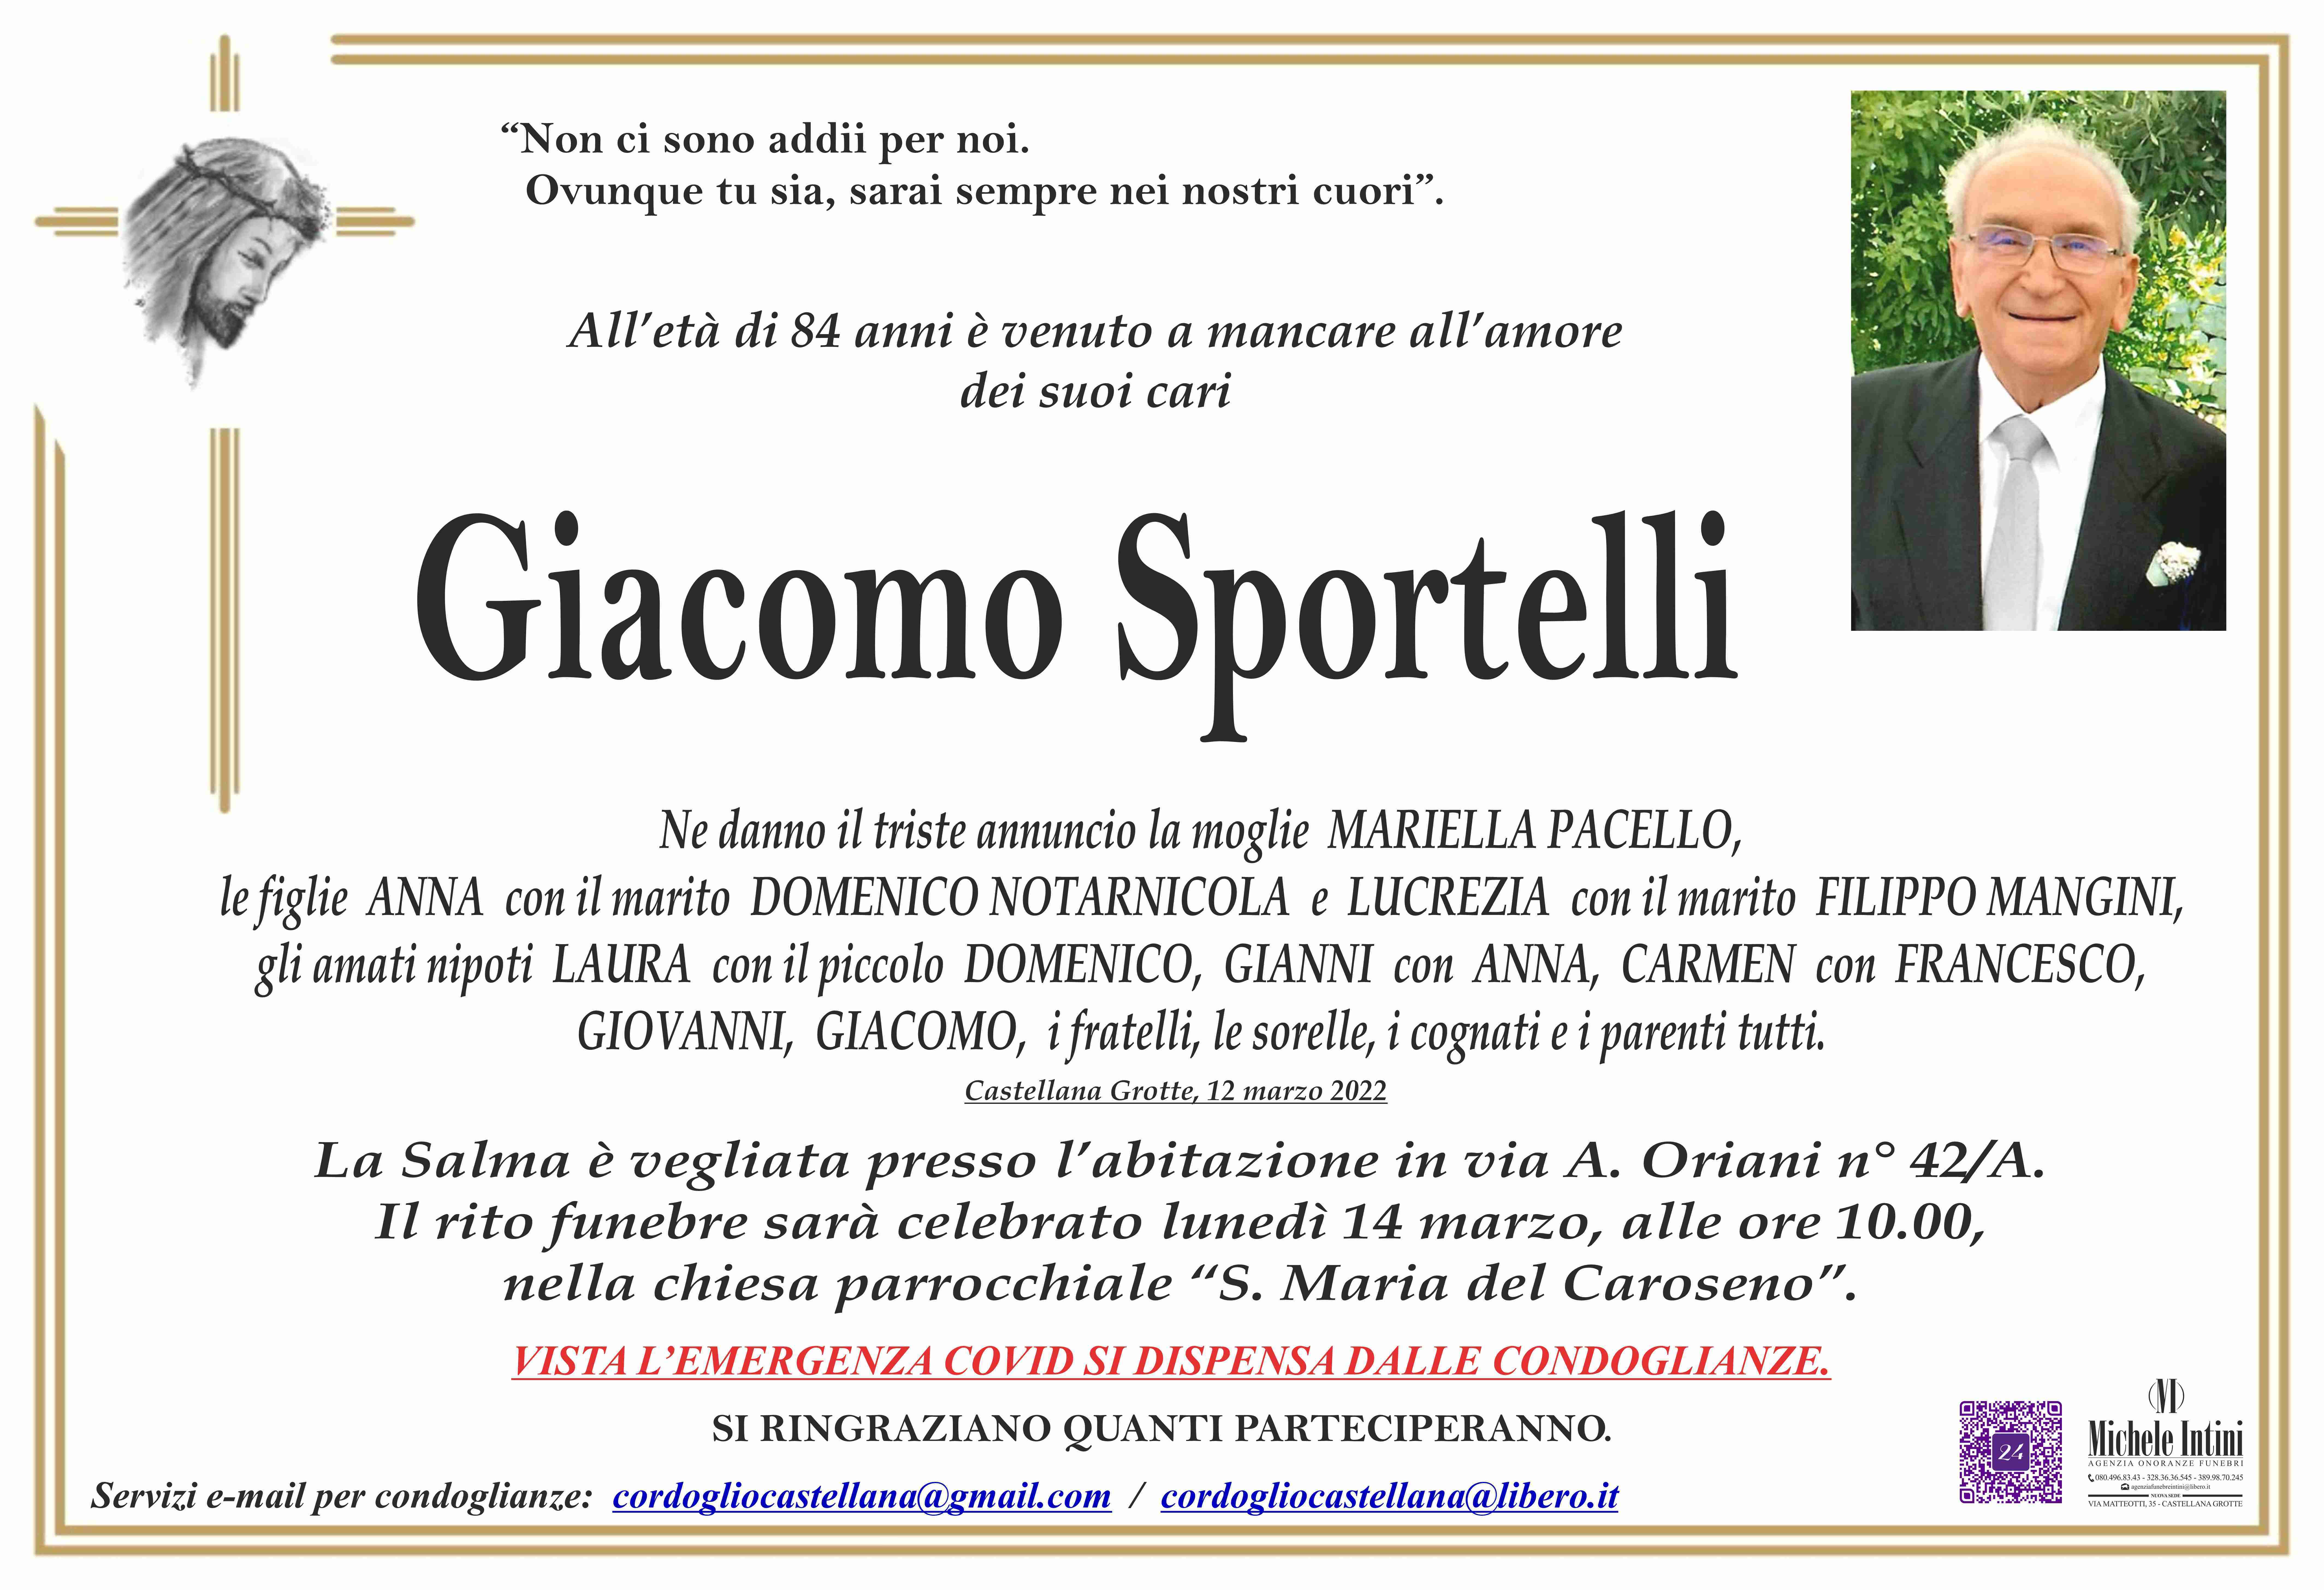 Giacomo Sportelli